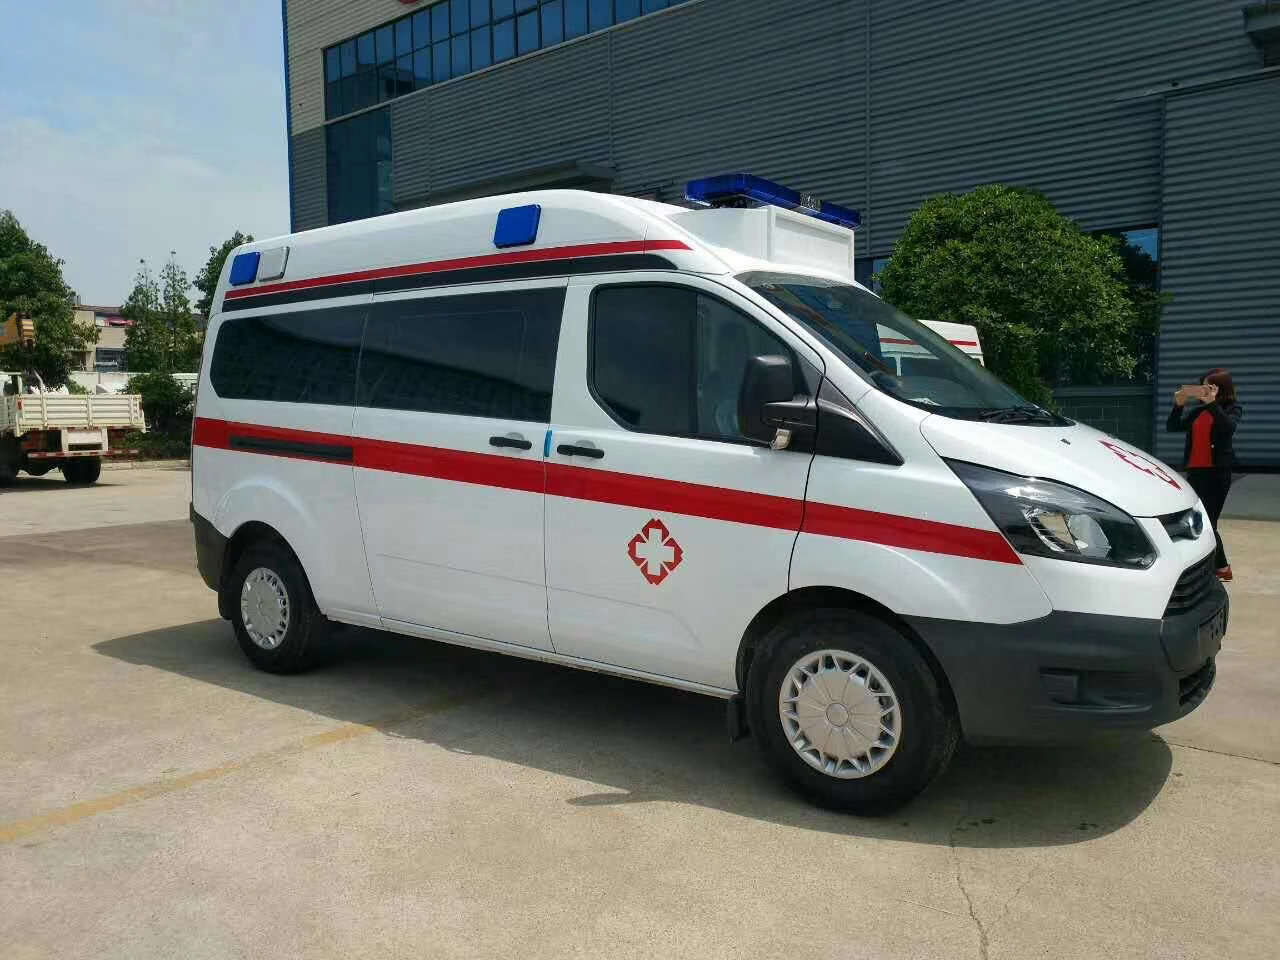 勐海县出院转院救护车